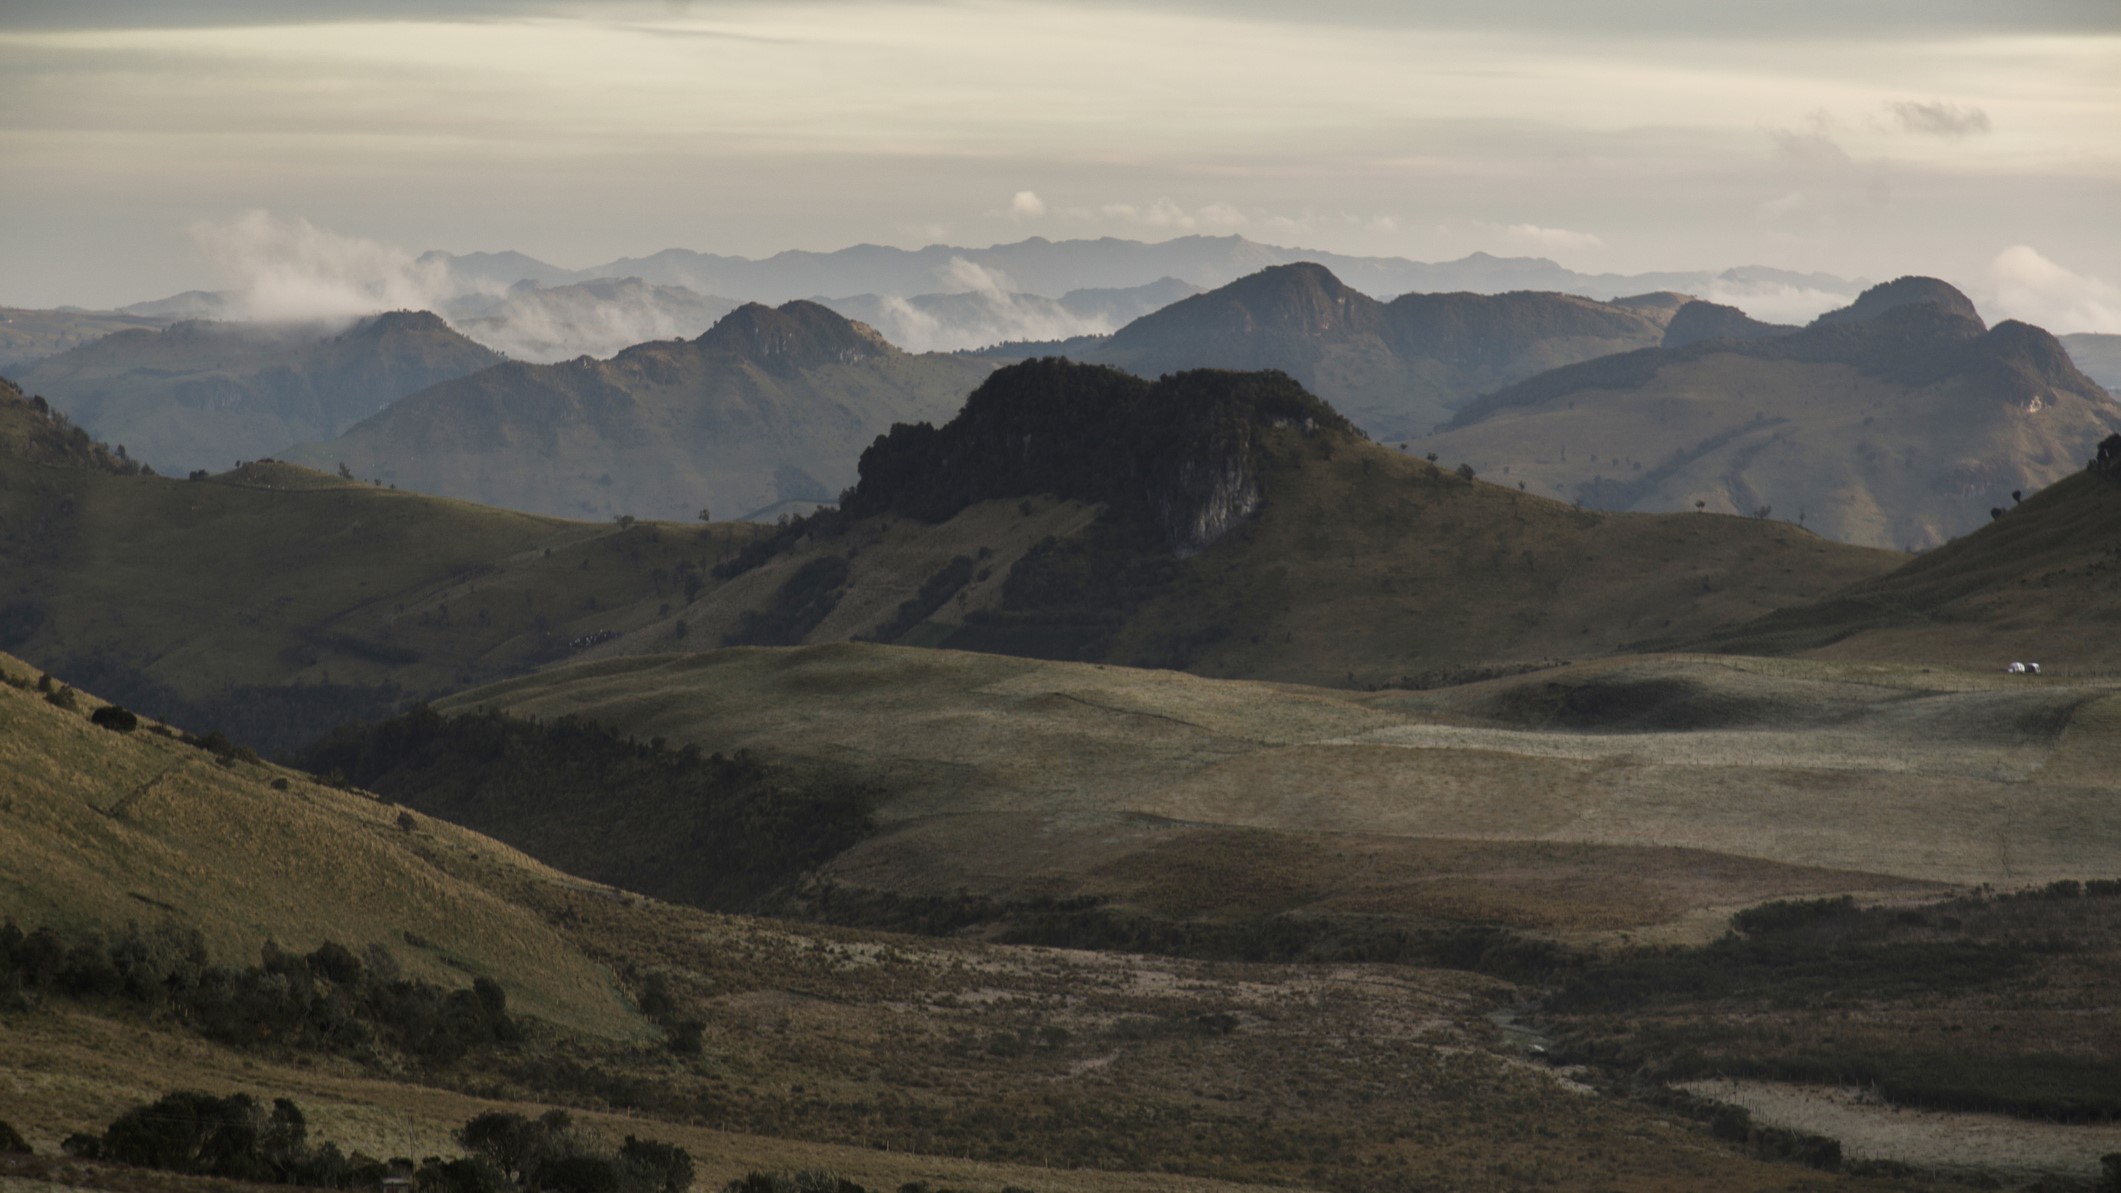 A landscape of the Sierra Nevada de Santa Marta mountain range from a distance.